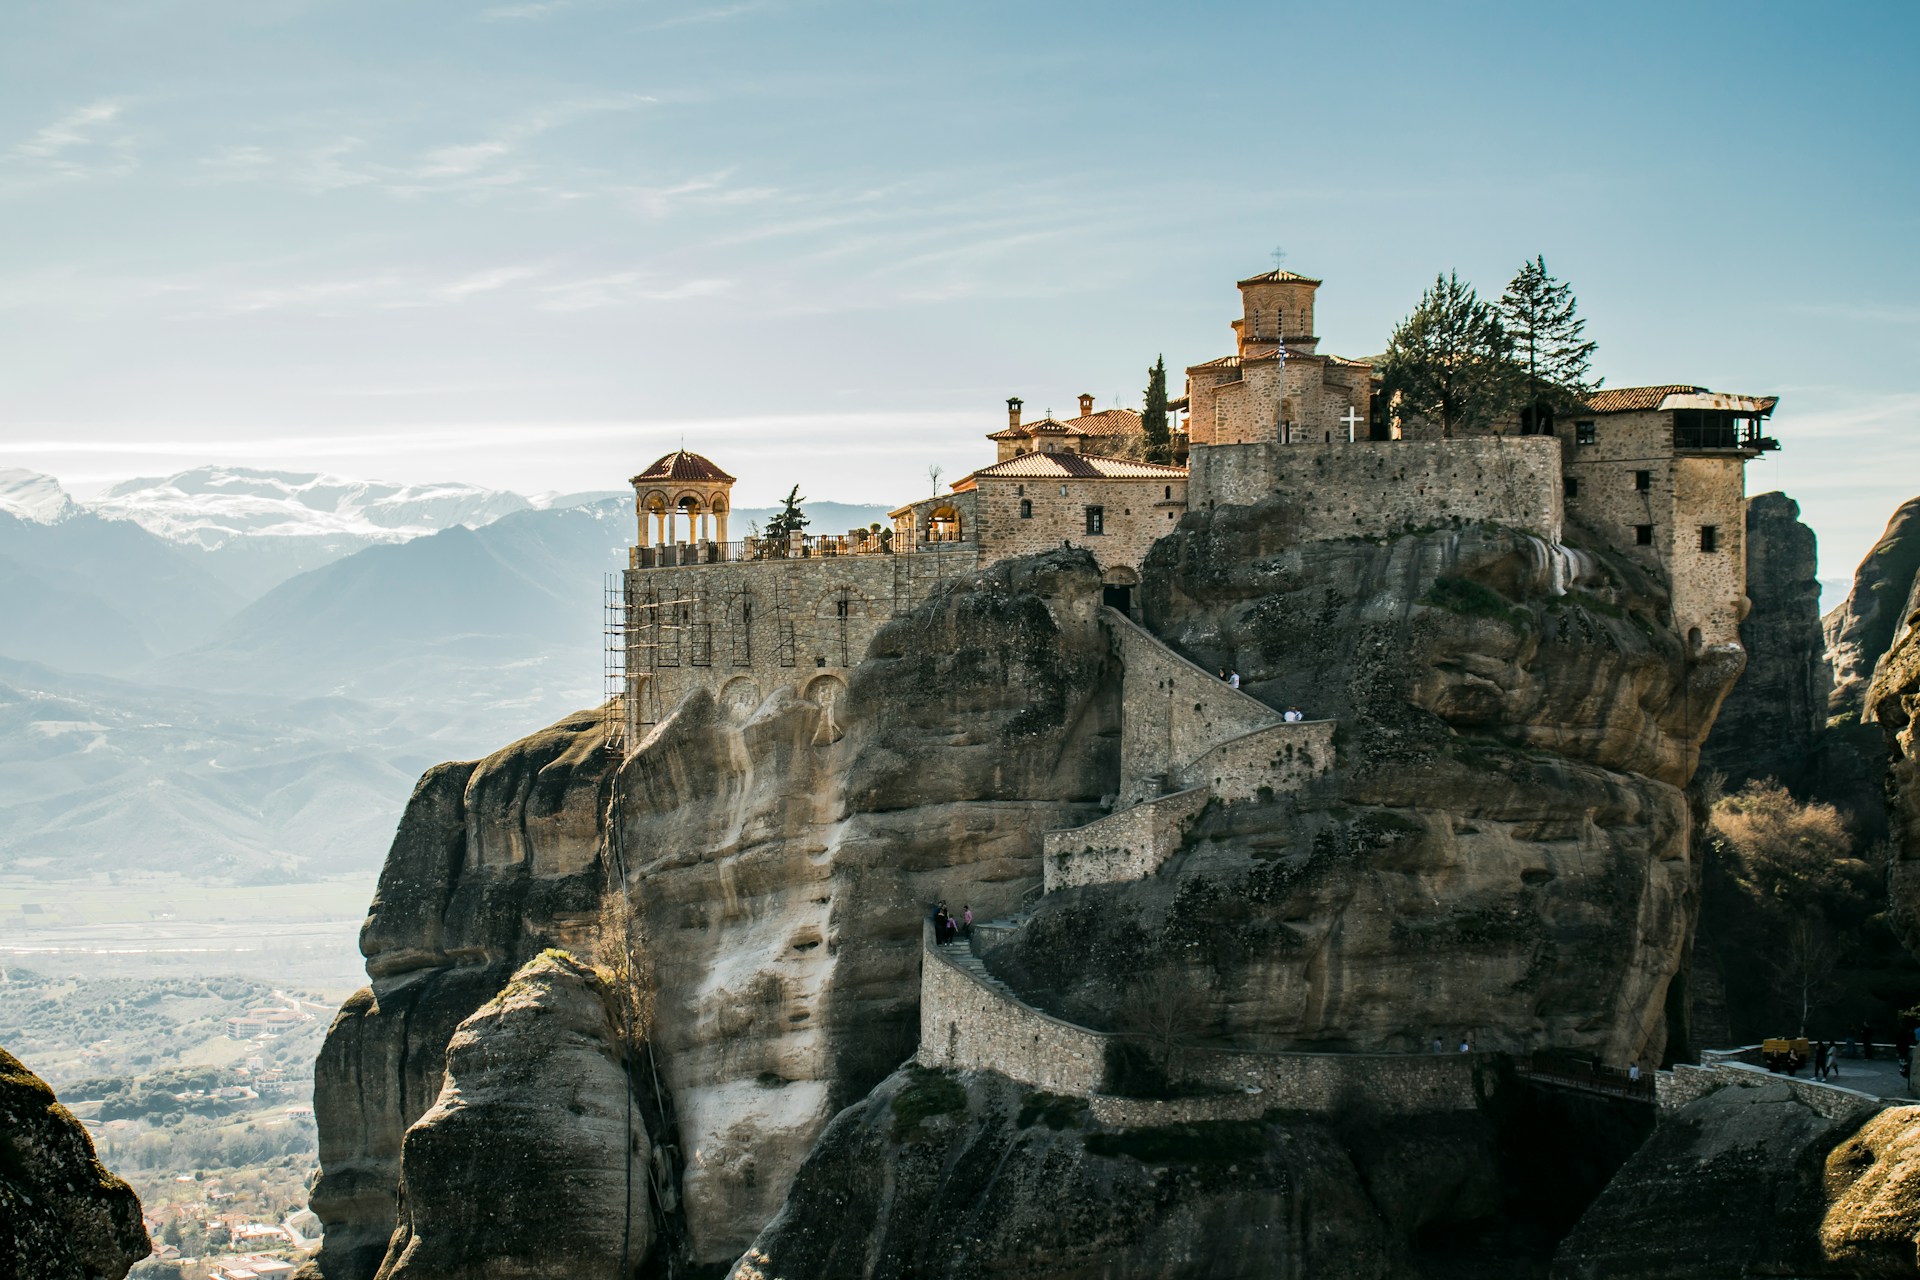 Alt-Text: Eine historische Klosteranlage, erbaut auf einem hohen Felsvorsprung, mit einem beeindruckenden Panoramablick auf umliegende Bergketten und das darunter liegende Tal im Sonnenlicht.